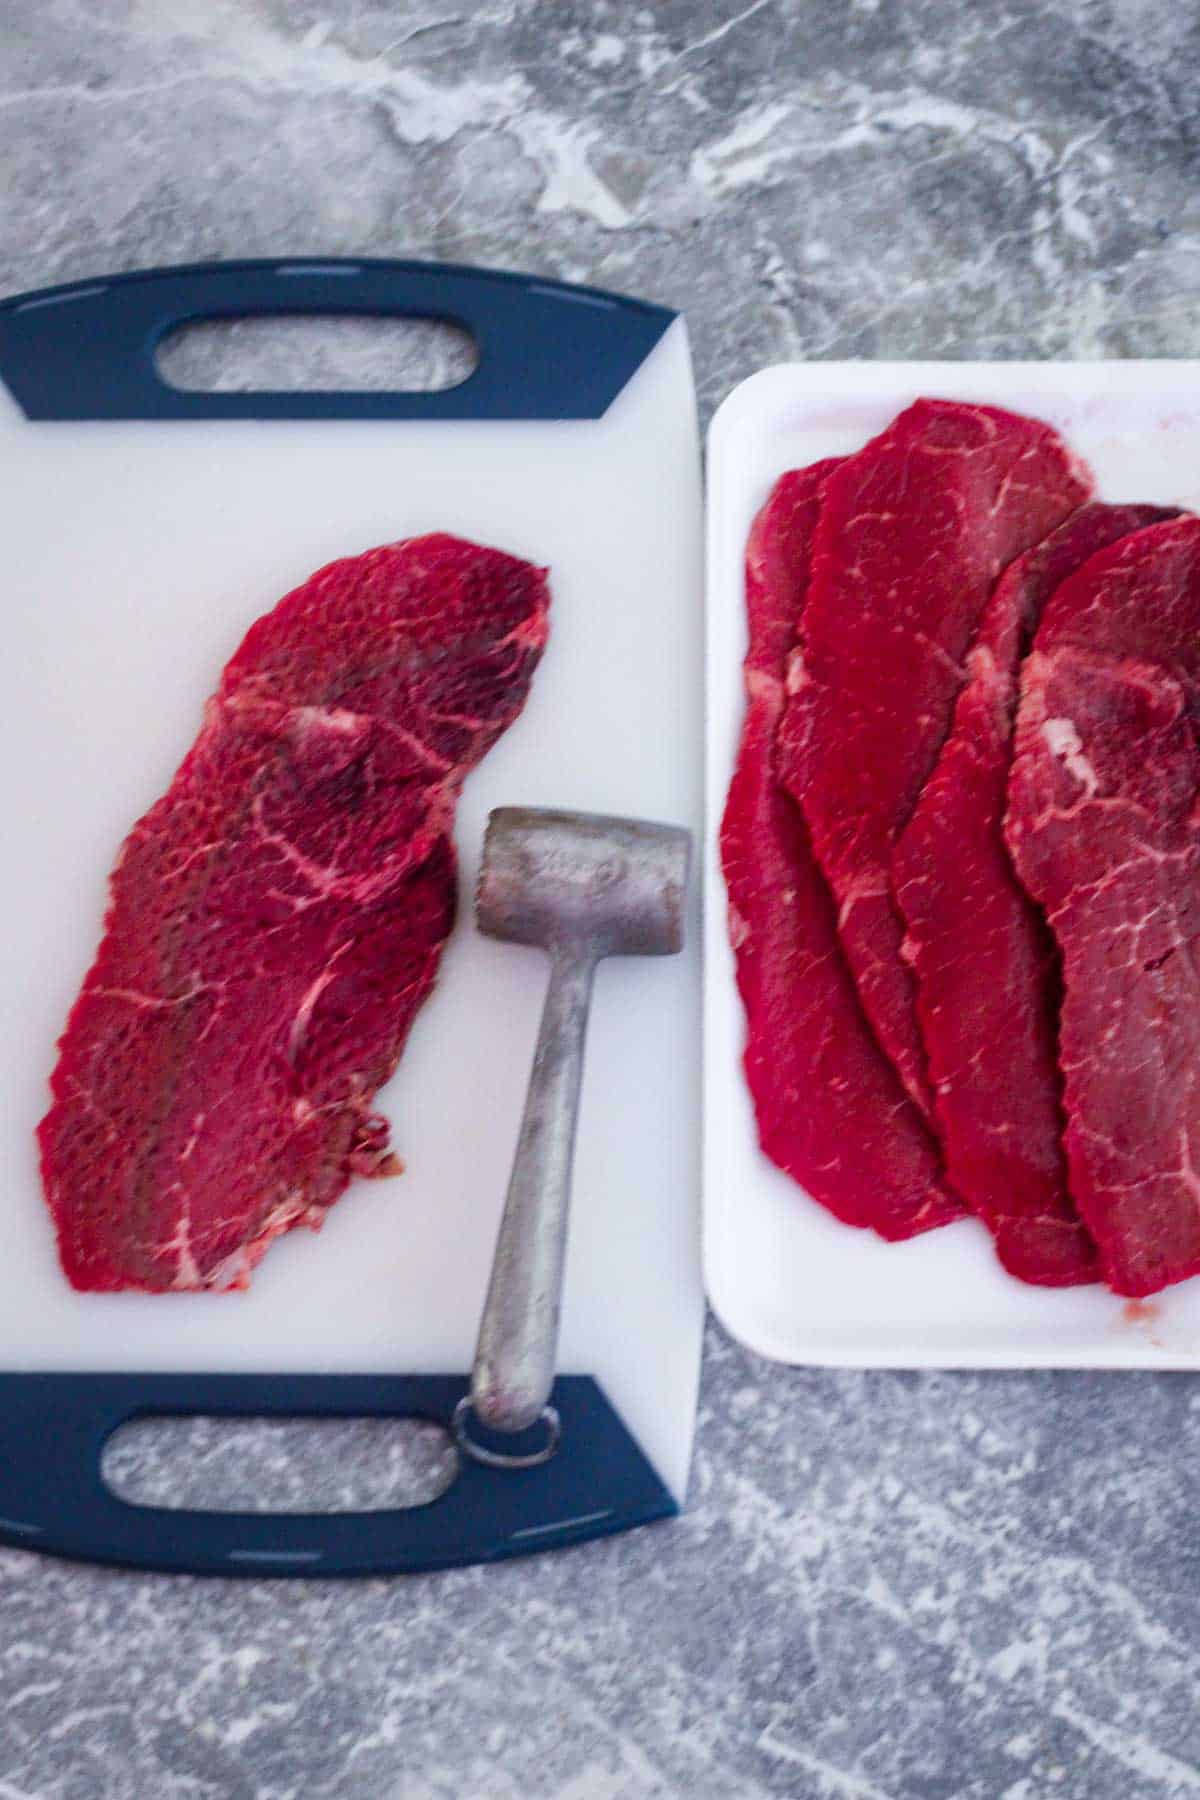 Tenderizing thin steaks to make beef milanesa steaks.